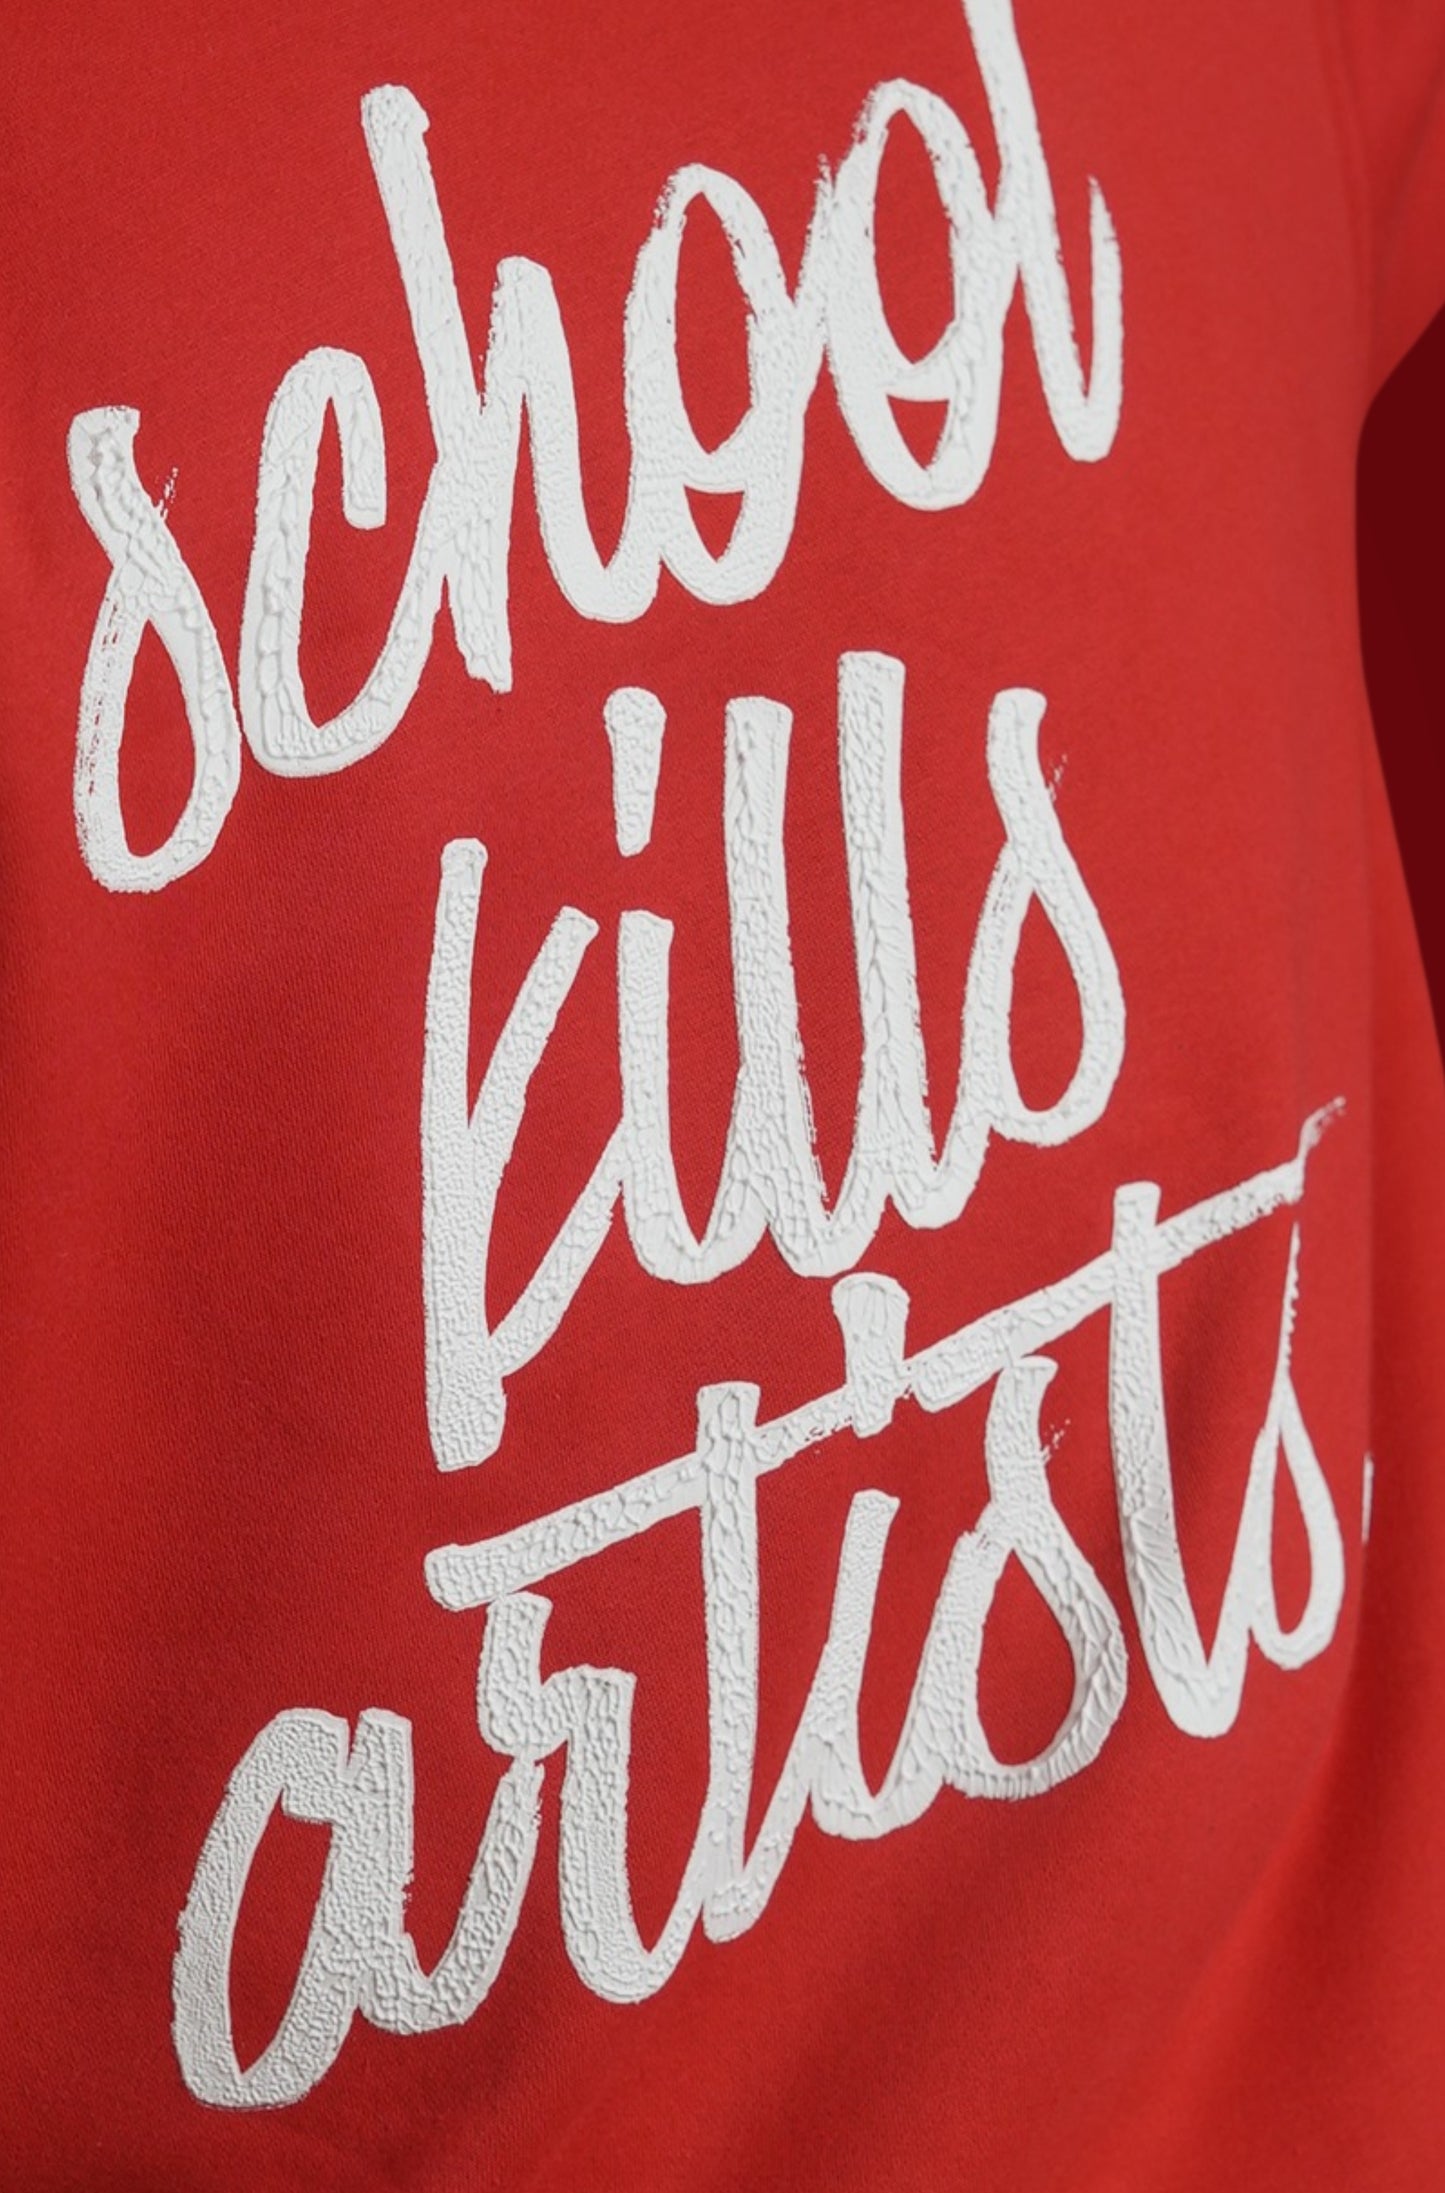 school kill artists.